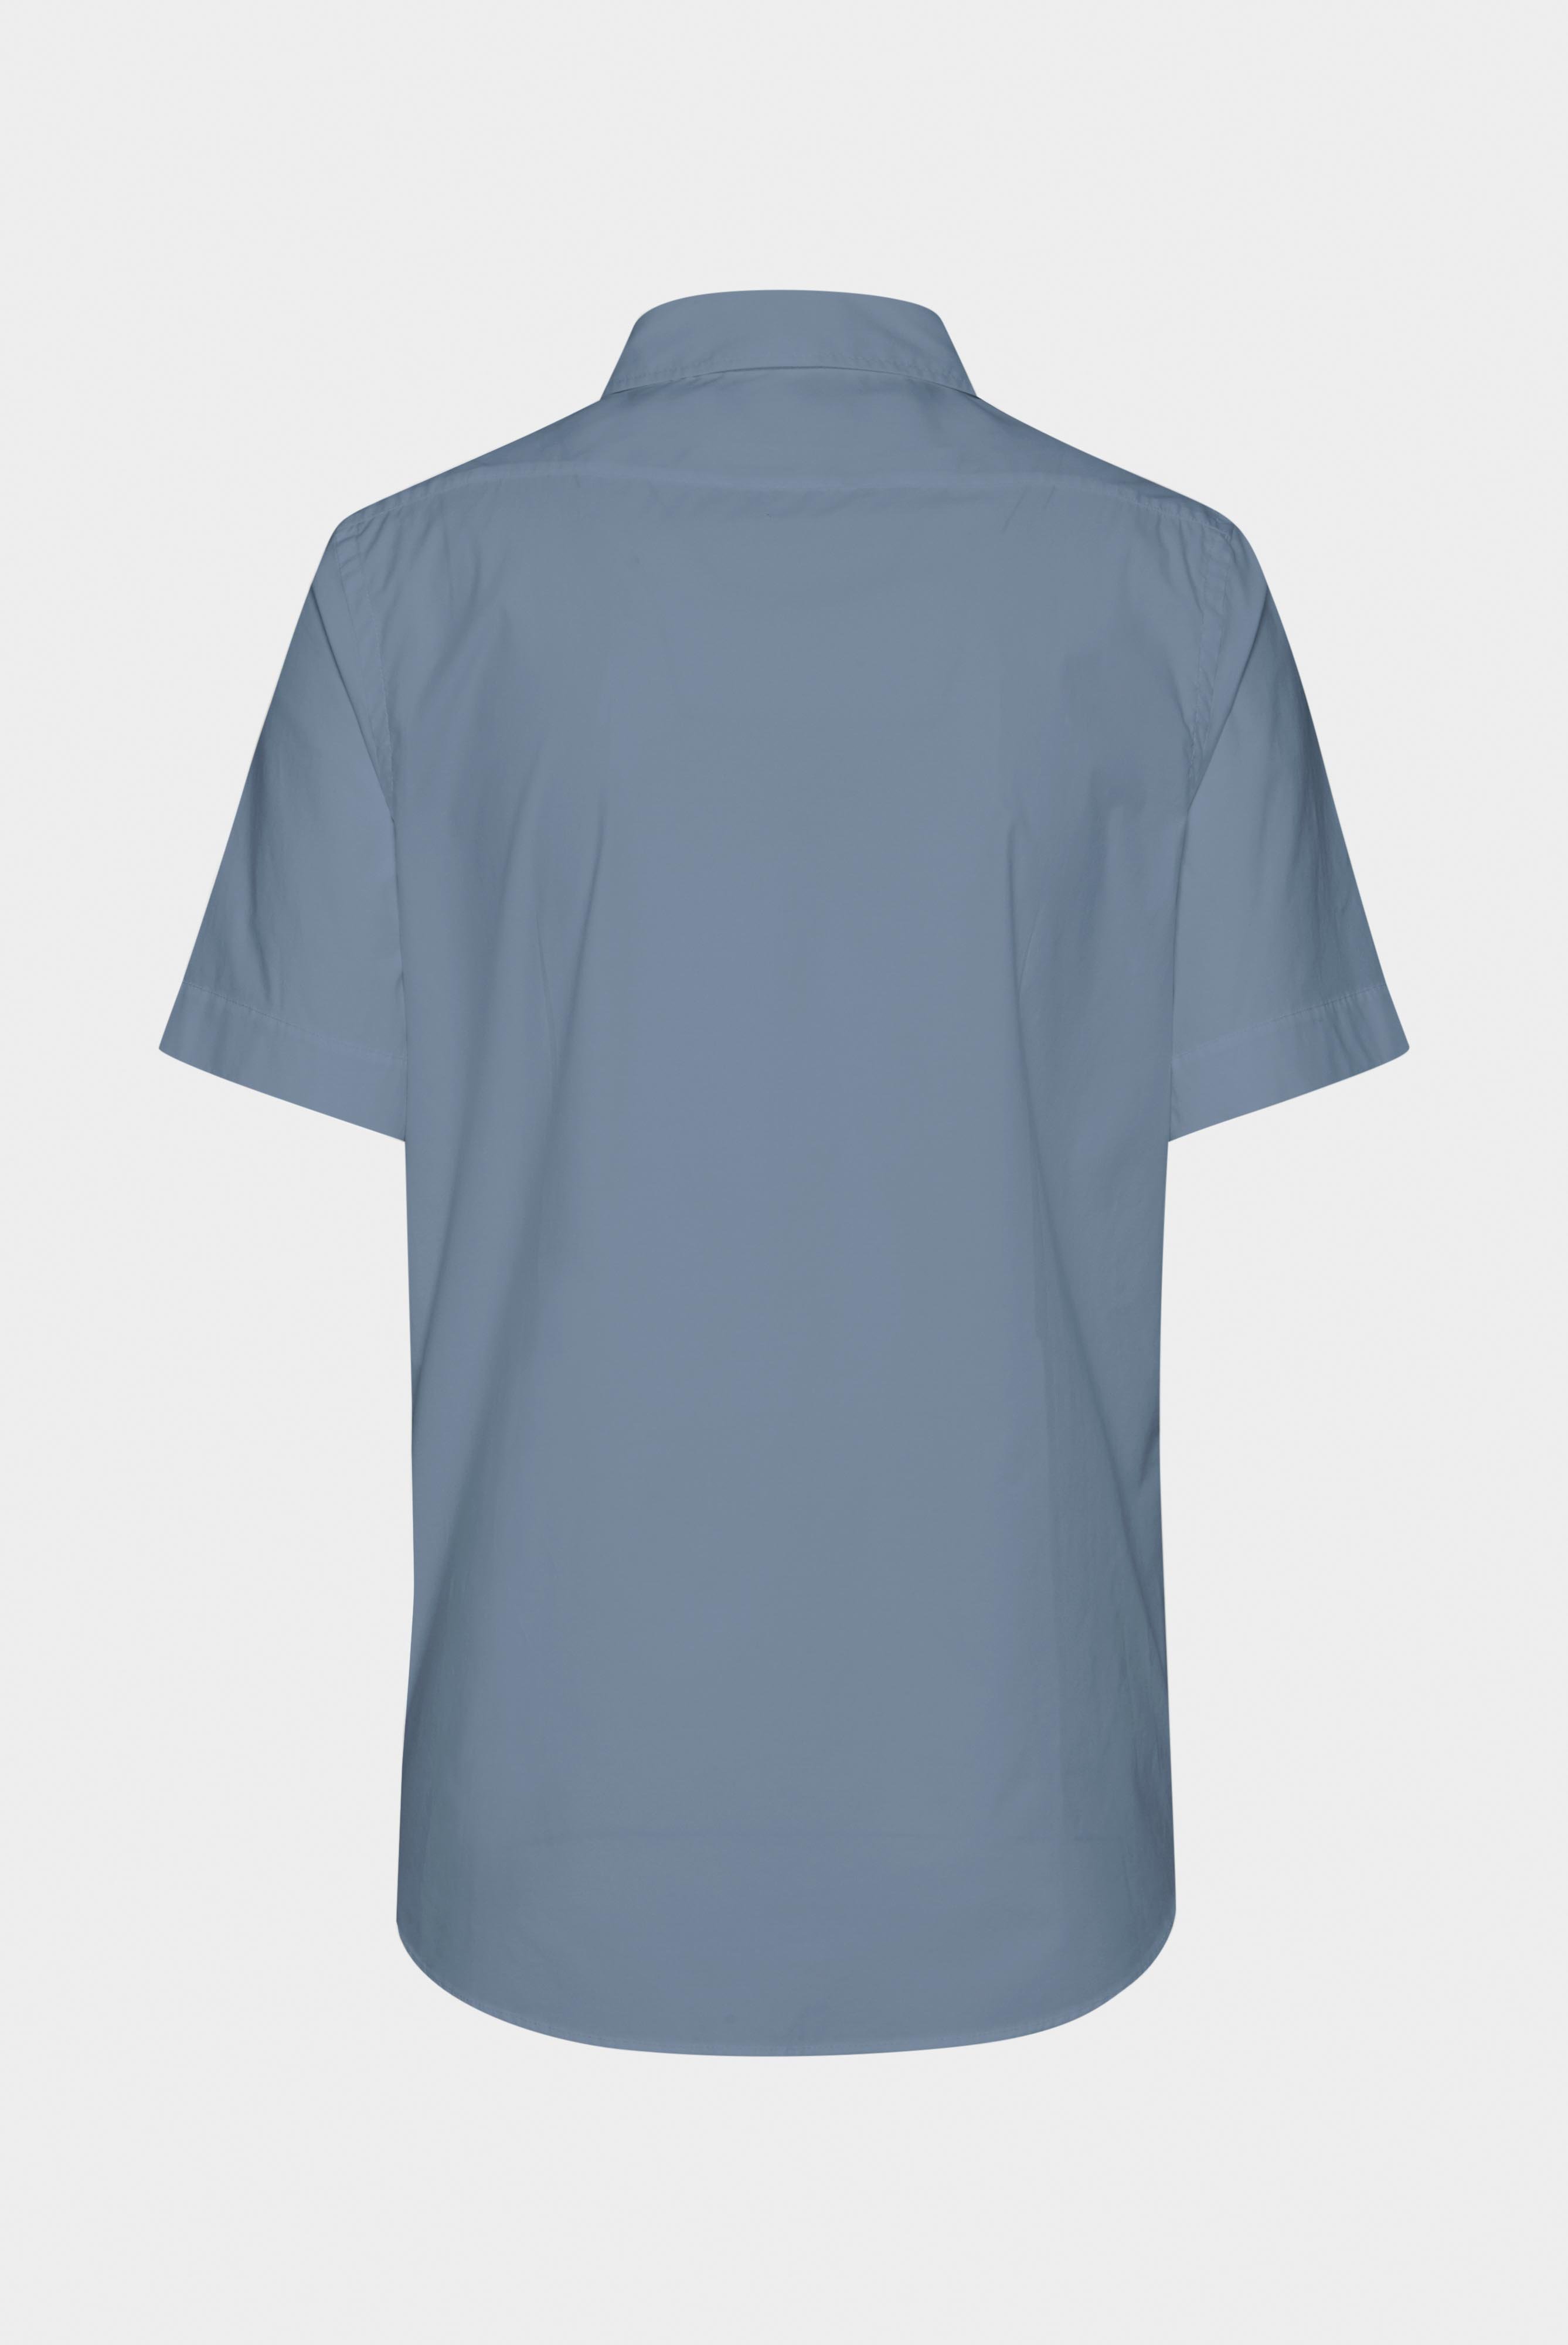 Kurzarm Hemden+Hemd aus leichter Baumwolle mit Stretch-Hemdärmeln+20.2035.Q2.H00240.000.38